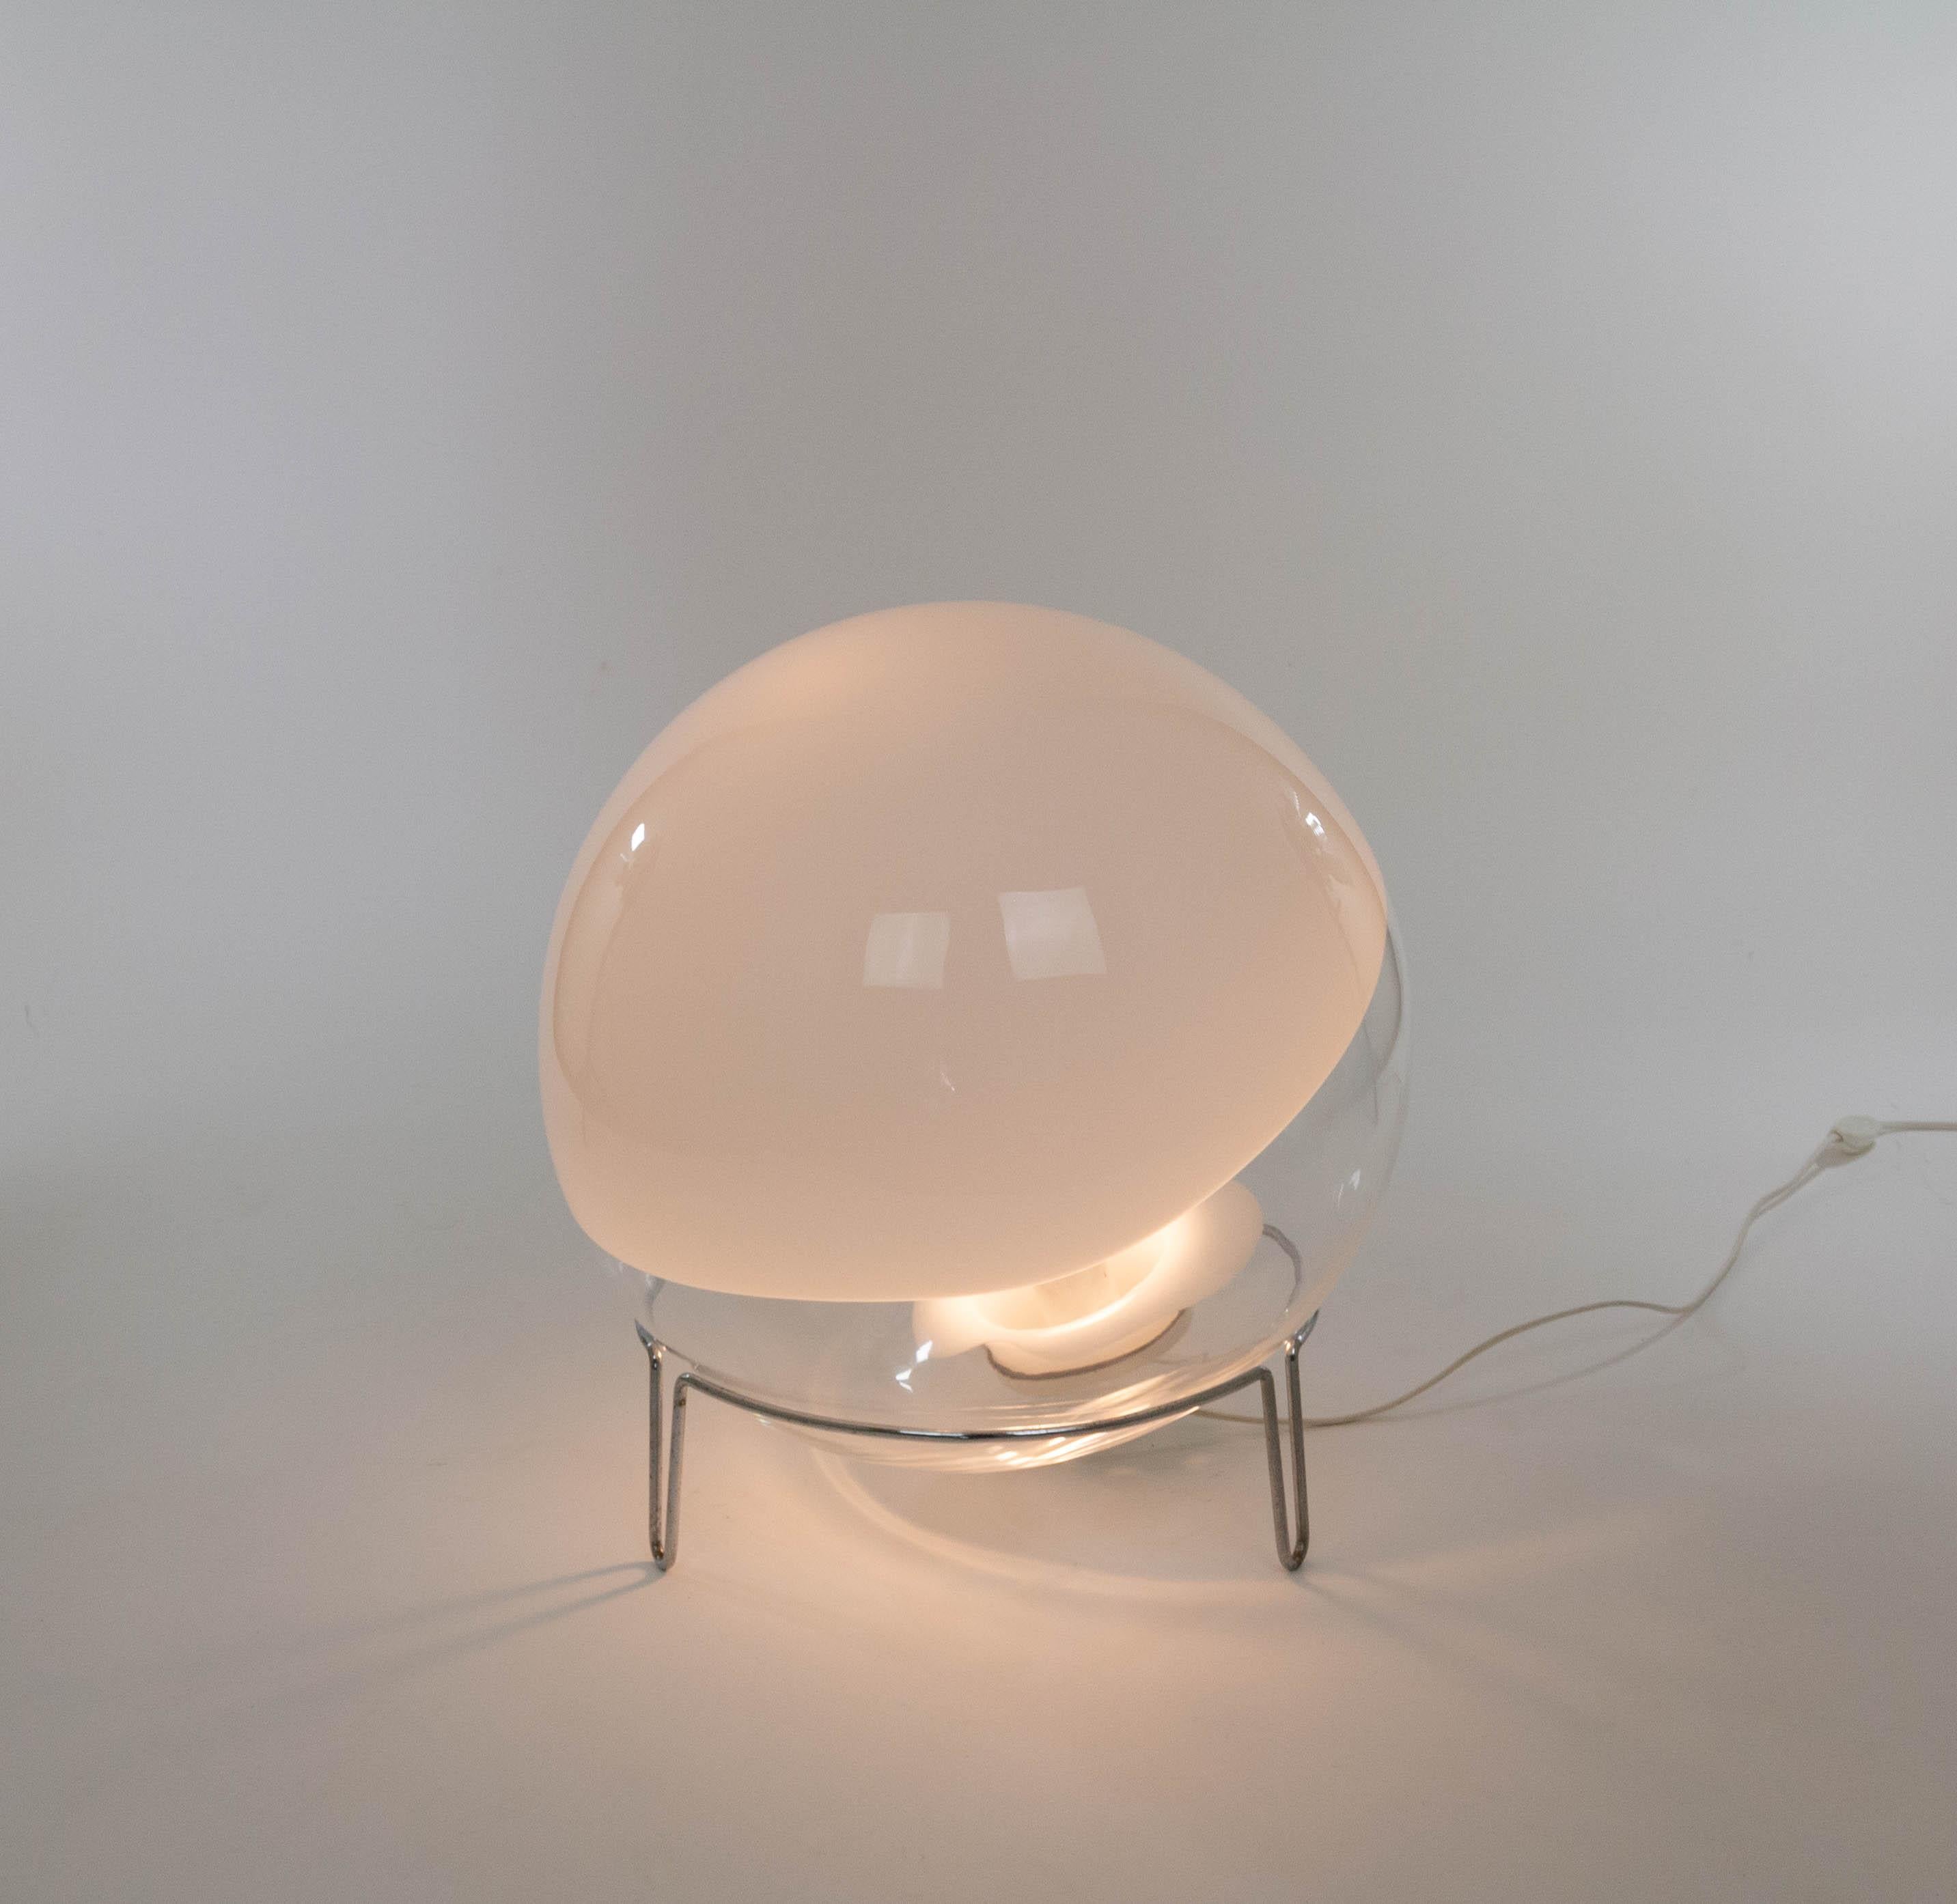 Eine Sfera Tisch- oder Stehleuchte, entworfen von Angelo Mangiarotti für Skipper Pollux, 1980er Jahre.

Die Leuchte besteht aus weißem und transparentem Murano-Glas und einem verchromten Metallrahmen. Die Glaskugel kann in alle Richtungen im